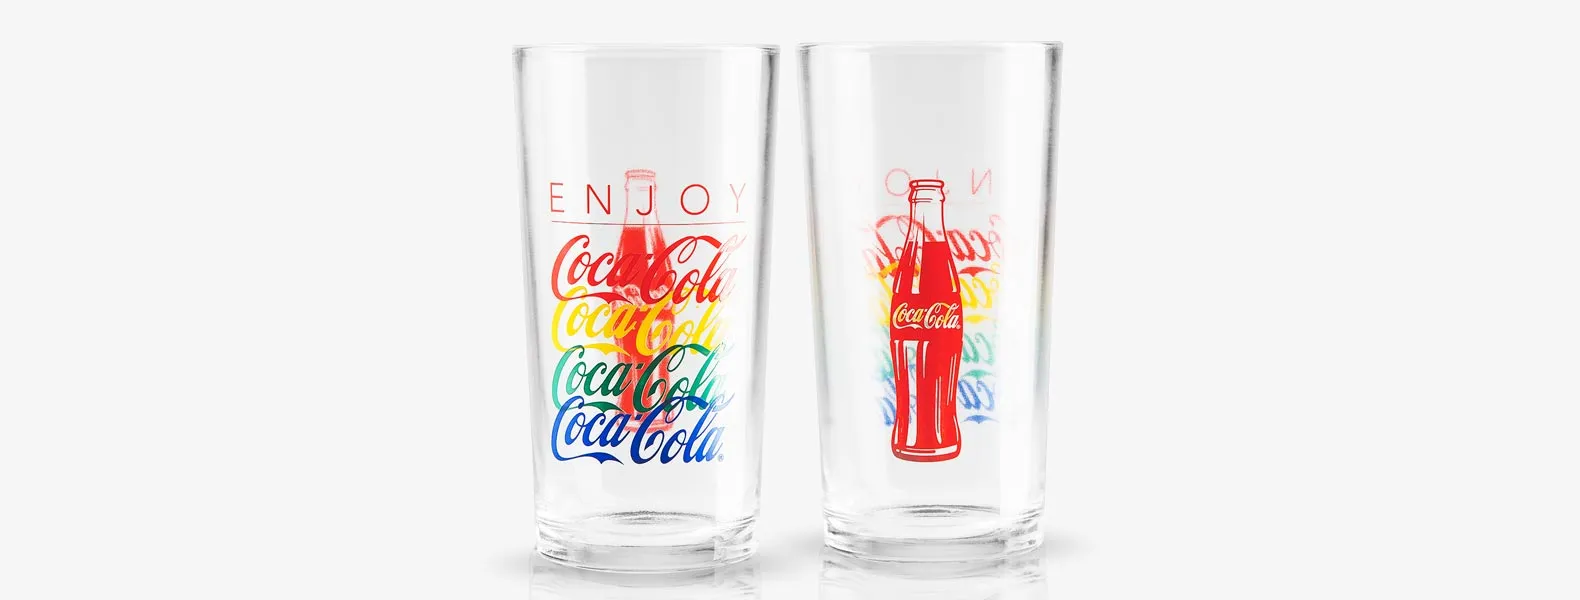 Jogo de copos personalizados contendo dois copos Coca Cola Summer em vidro.